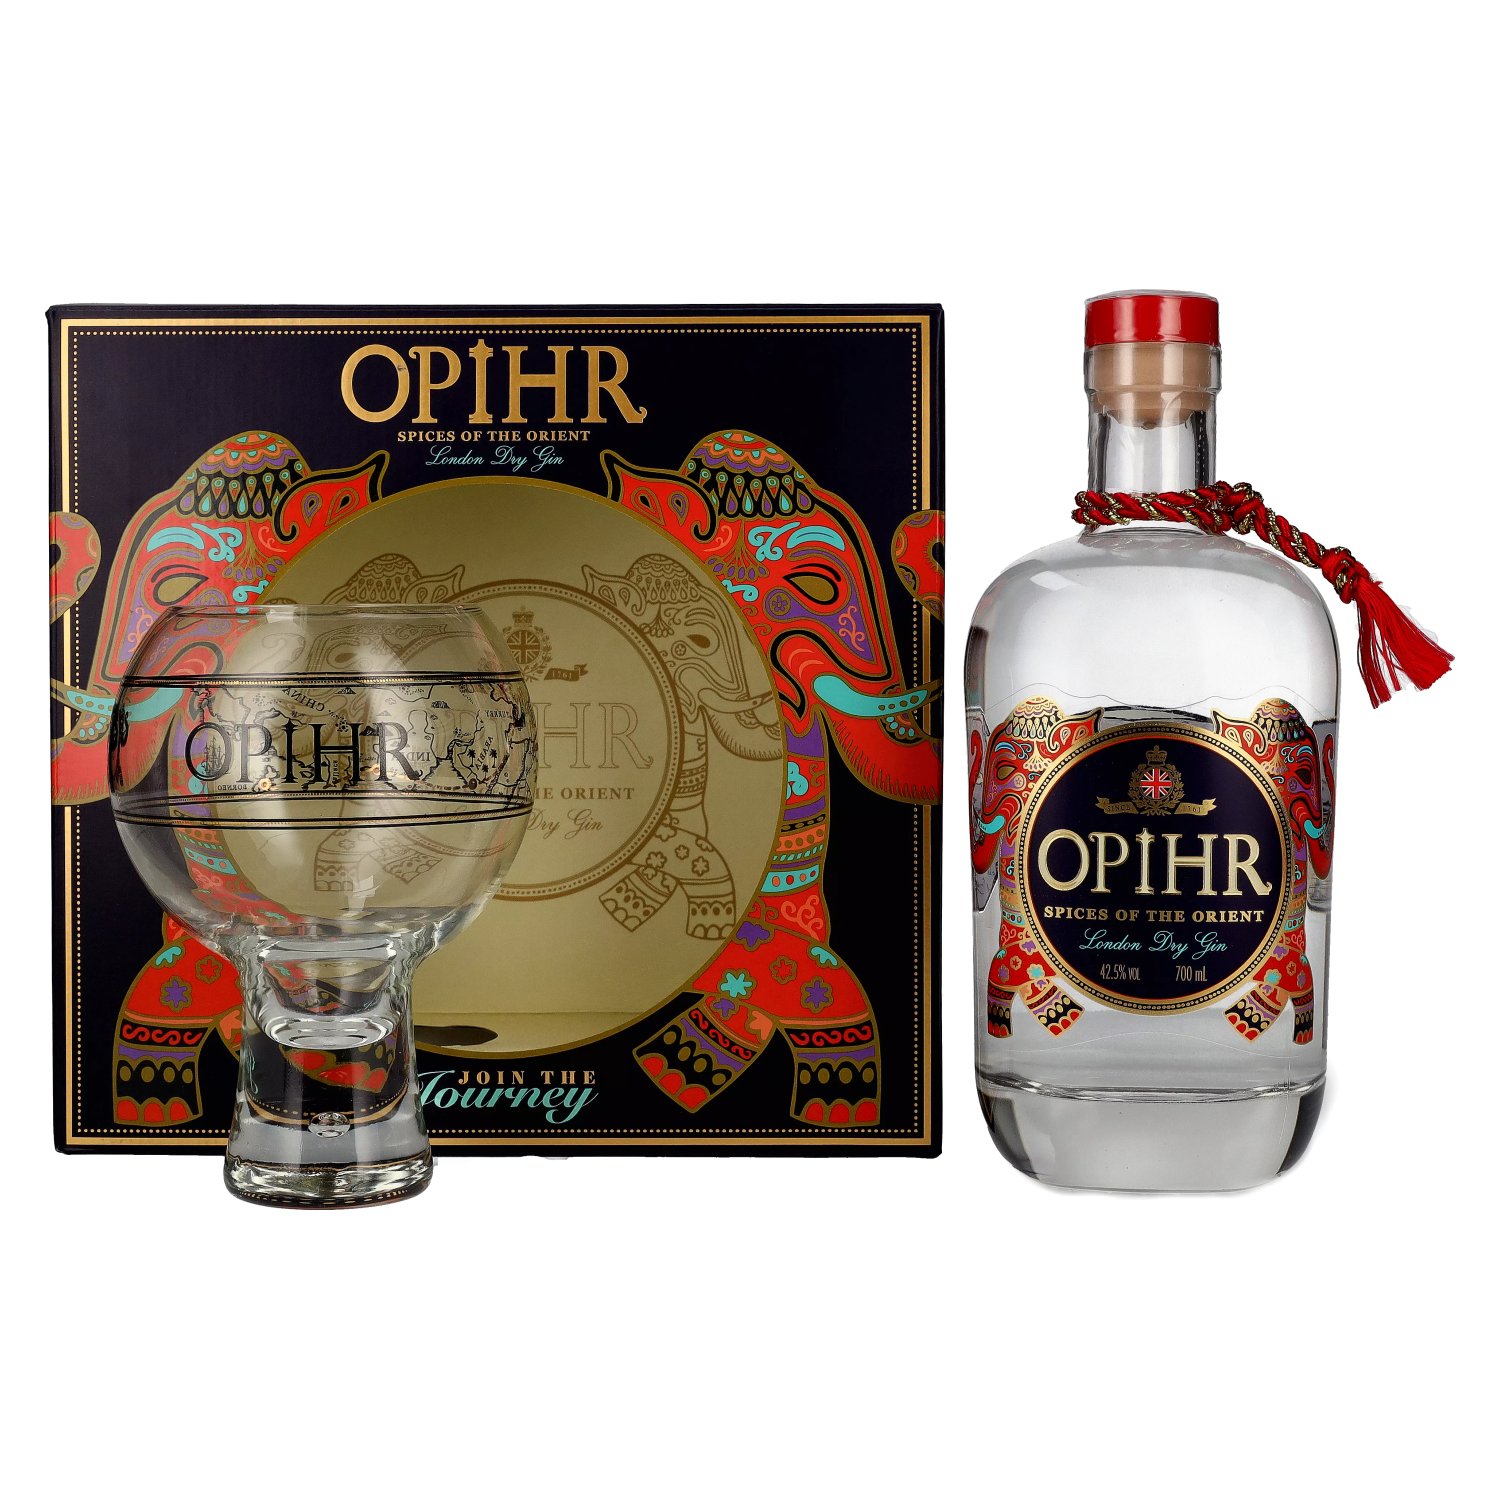 Opihr ORIENTAL SPICED London Dry mit 42,5% in 0,7l Gin Geschenkbox Globe-Glas Vol